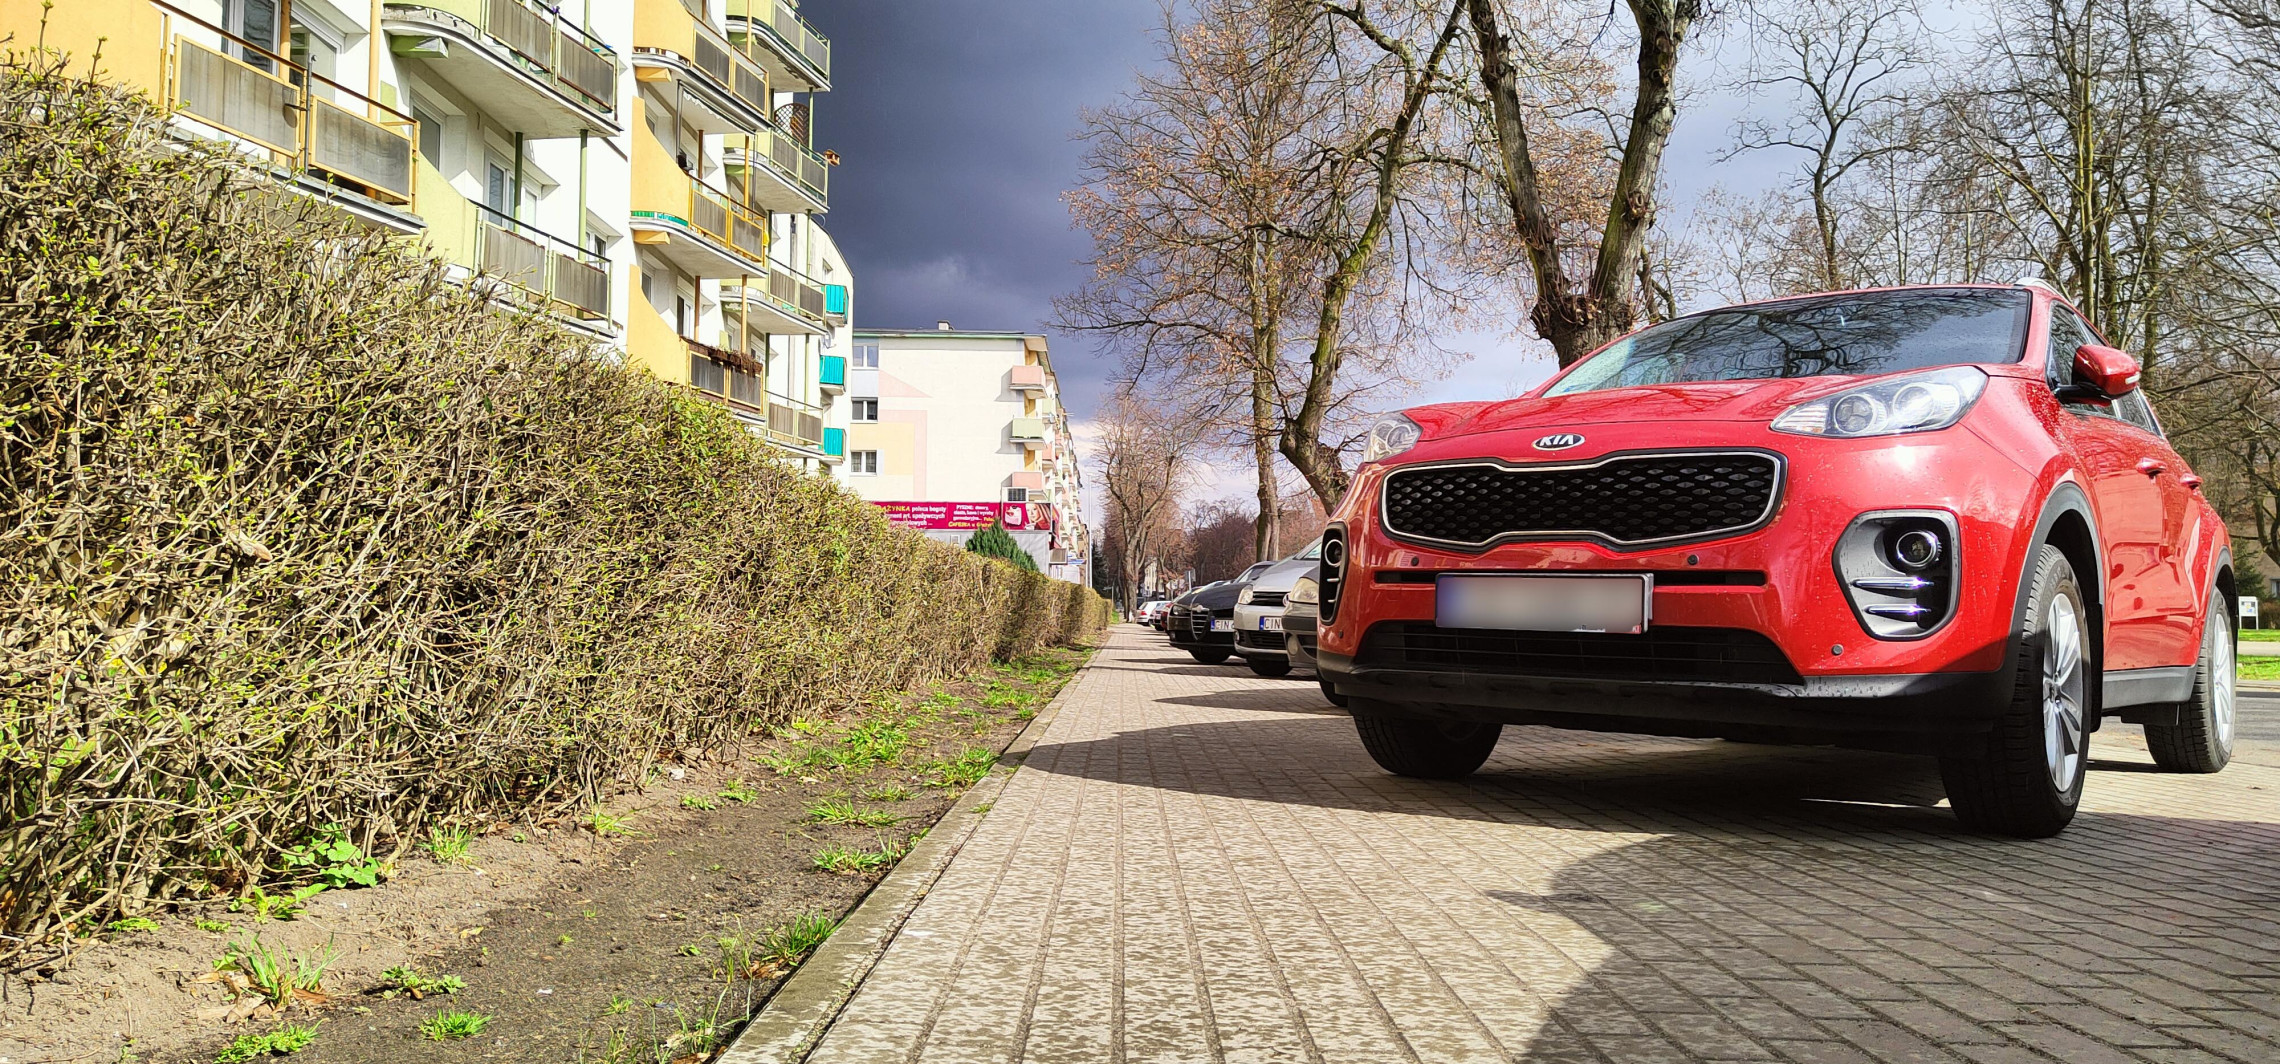 Inowrocław - Parkowaniem przy ul. Narutowicza zajmą się prawnicy